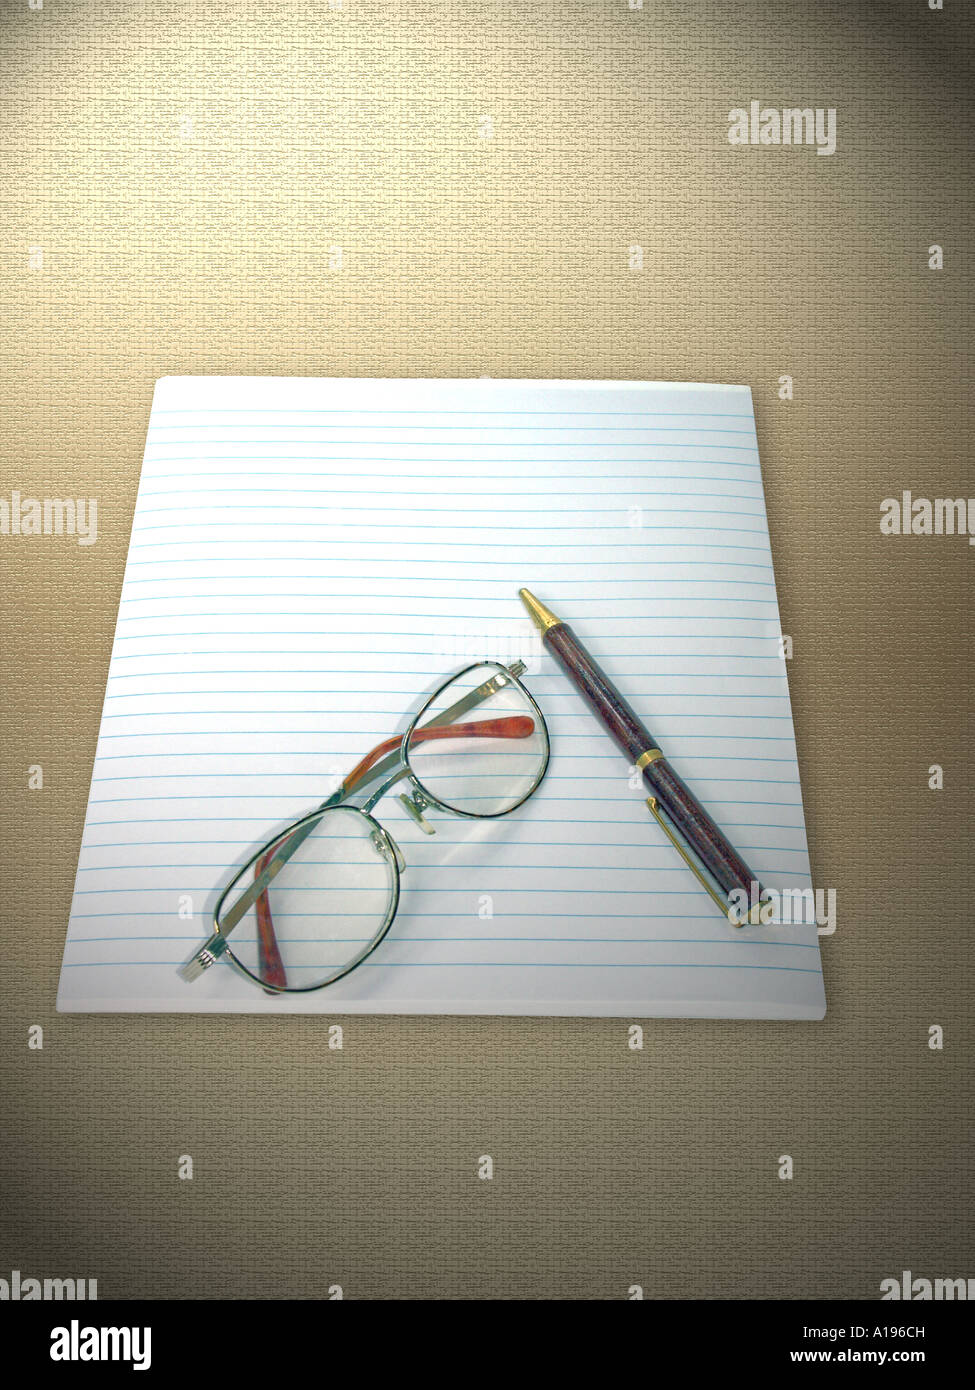 Ein Blatt Liniertes Papier, Lesebrille und einem Kugelschreiber auf einem hellen gemusterten Stoff Hintergrund Stockfoto